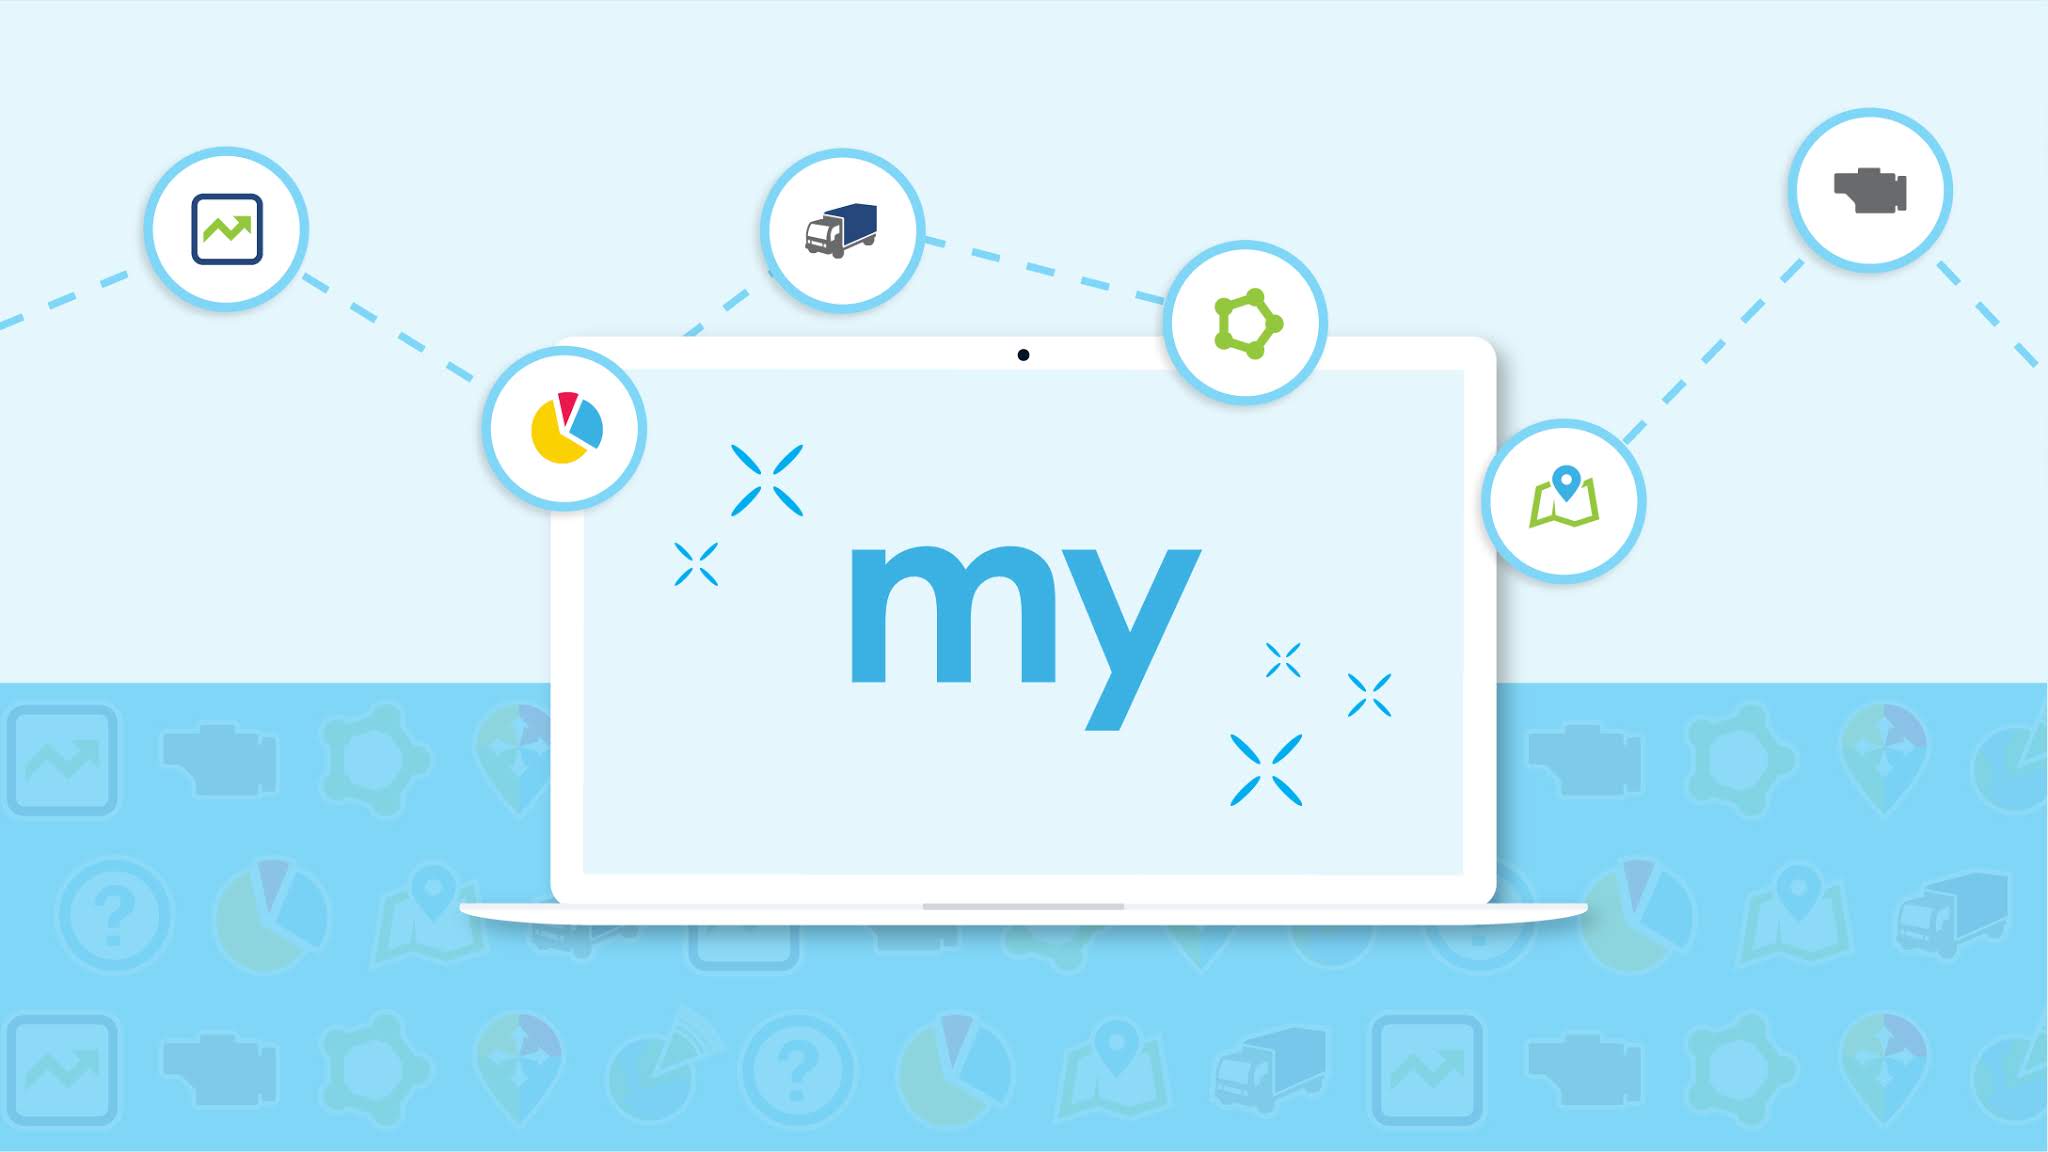 Foto de una laptop con la palabra "my" en la pantalla en fondo azul claro con iconos de transporte.